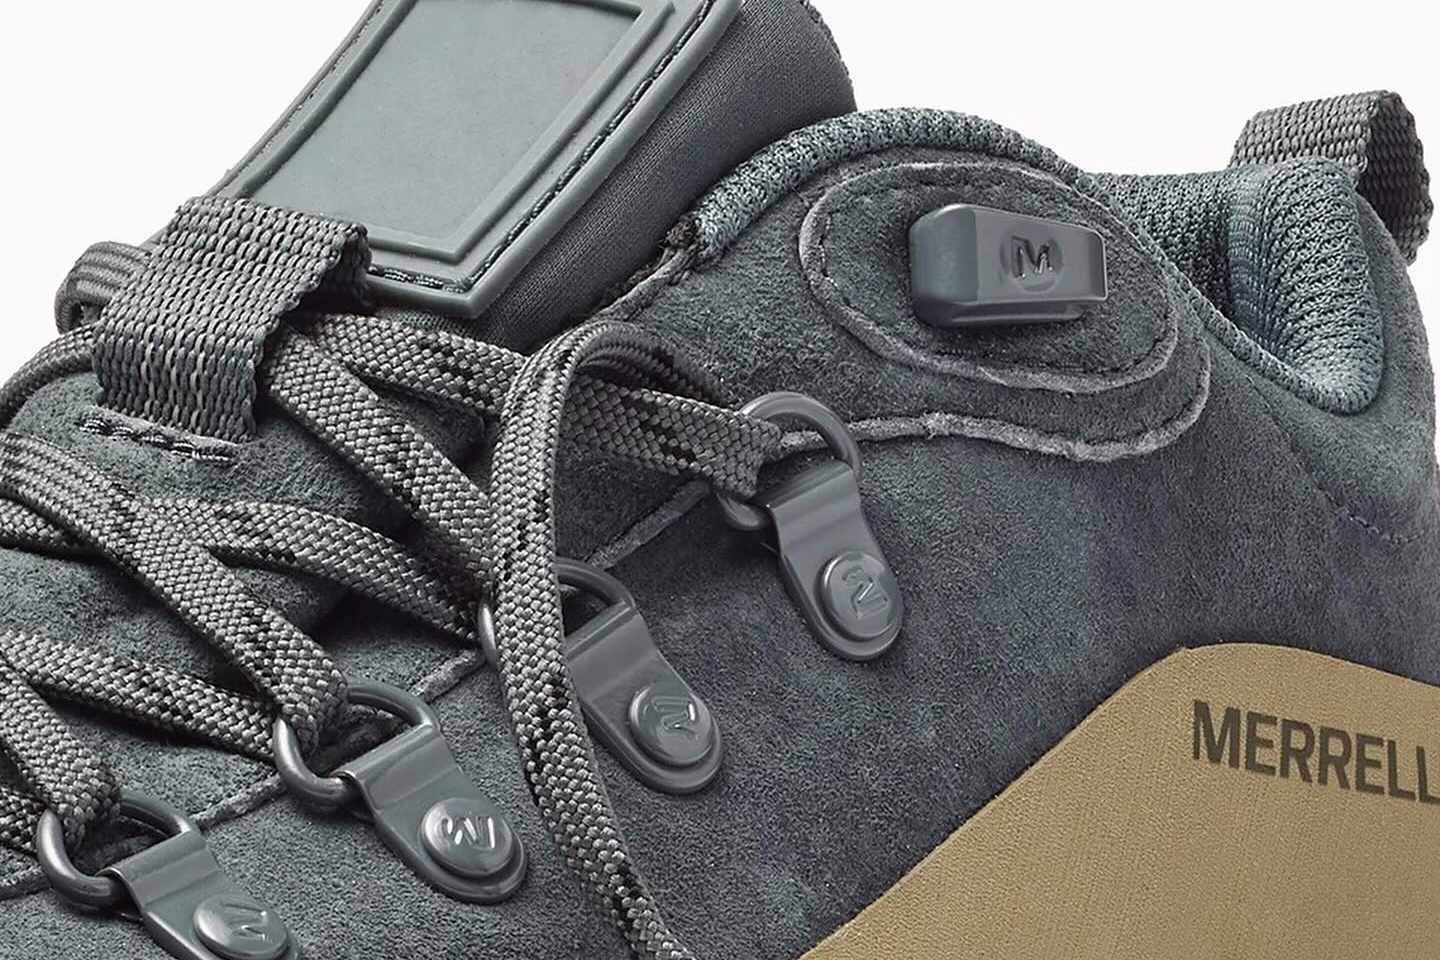 Belstaff's Merrell Ontario SP sneaker collab in gray suede